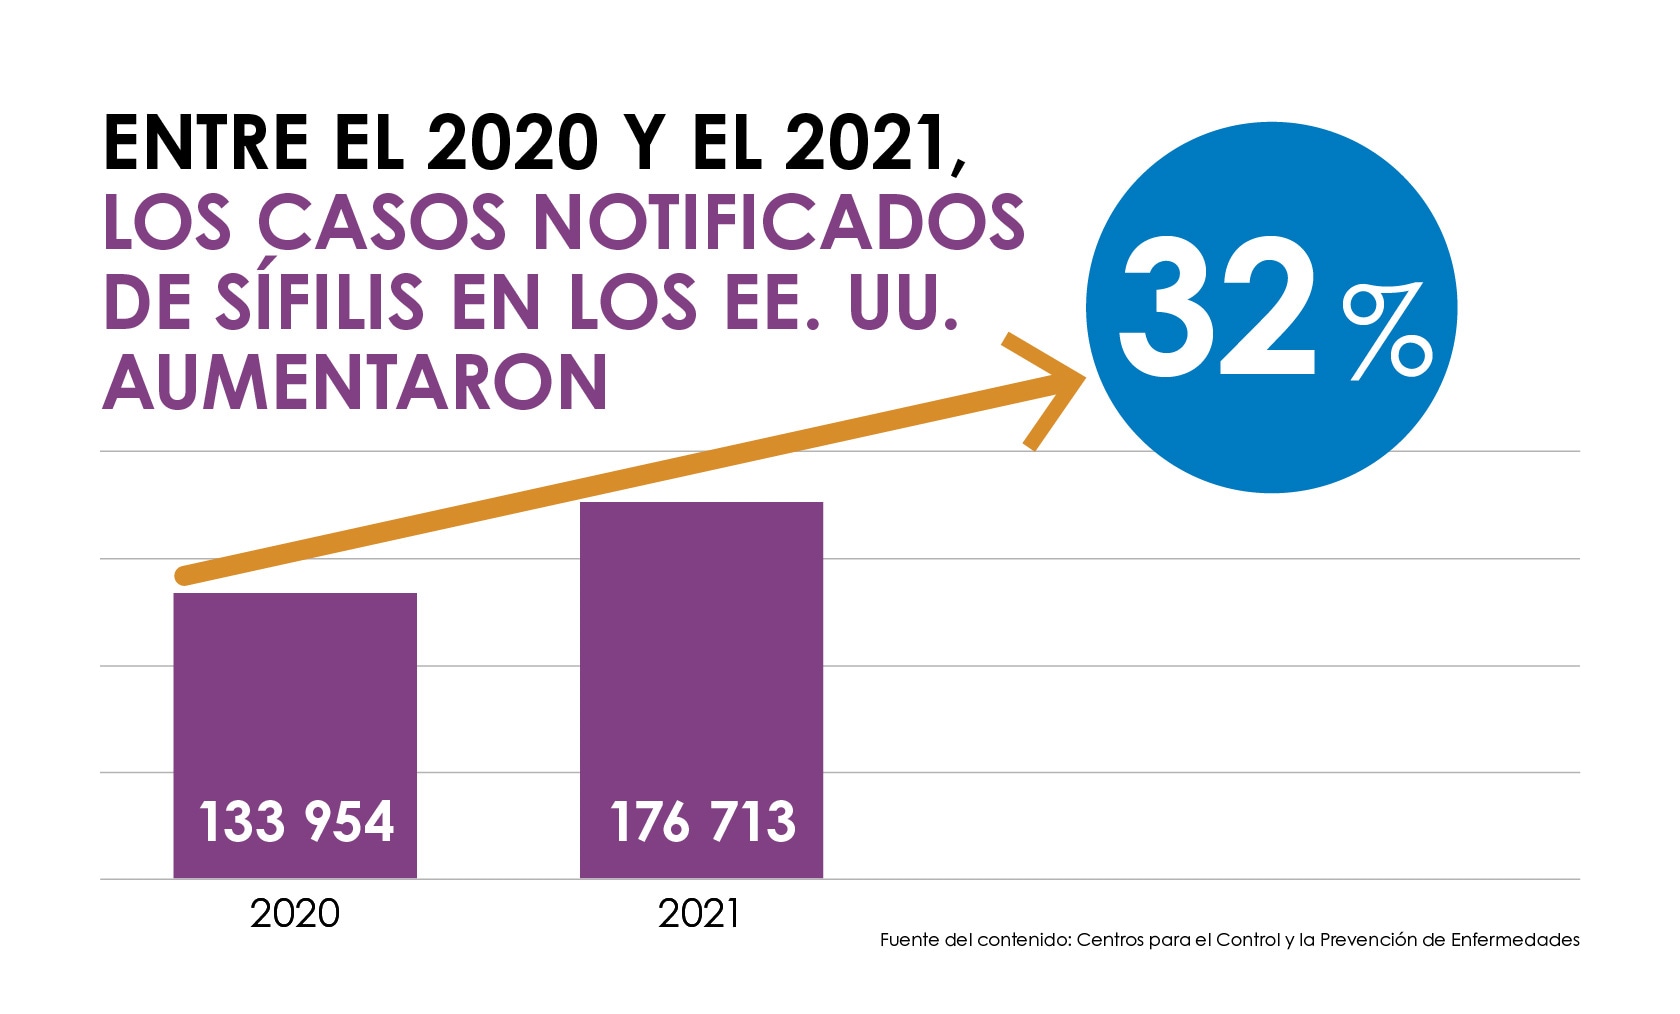 Un diagrama de barras muestra que los casos notificados de sífilis aumentaron un 32 % entre el 2020 y el 2021, de 133,954 de casos notificados en el 2020 a 176,713 en el 2021